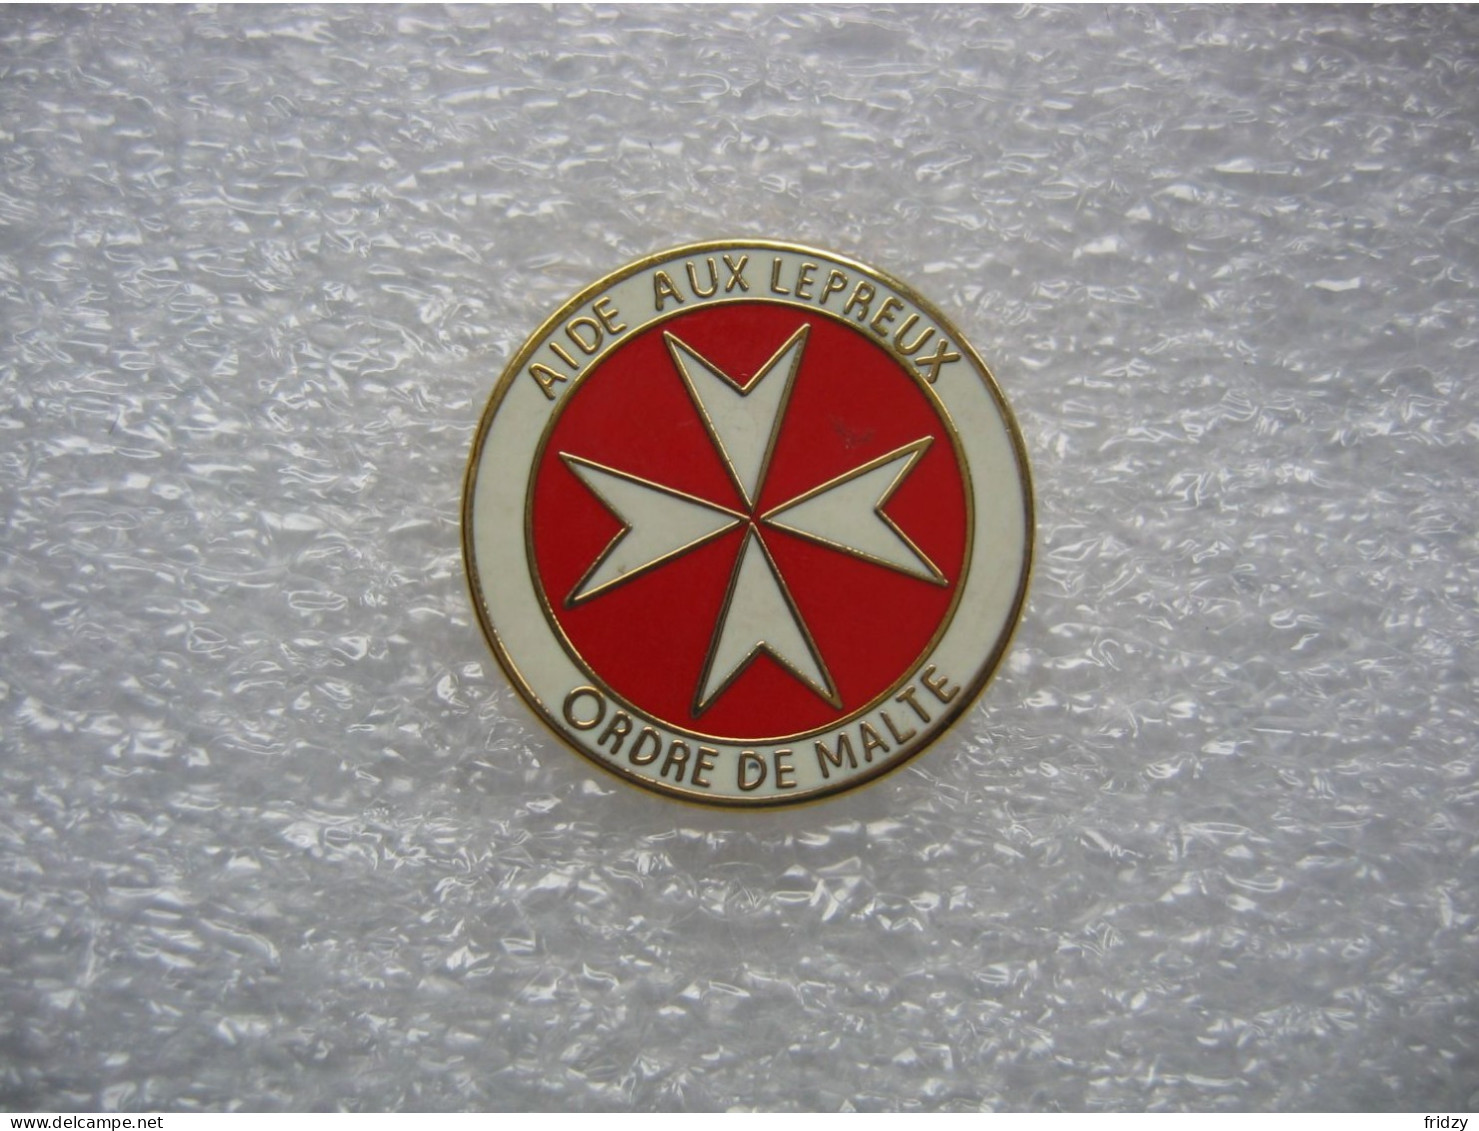 Pin's Emblème De Malte. Aide Aux Lépreux, Ordre De Malte - Medical